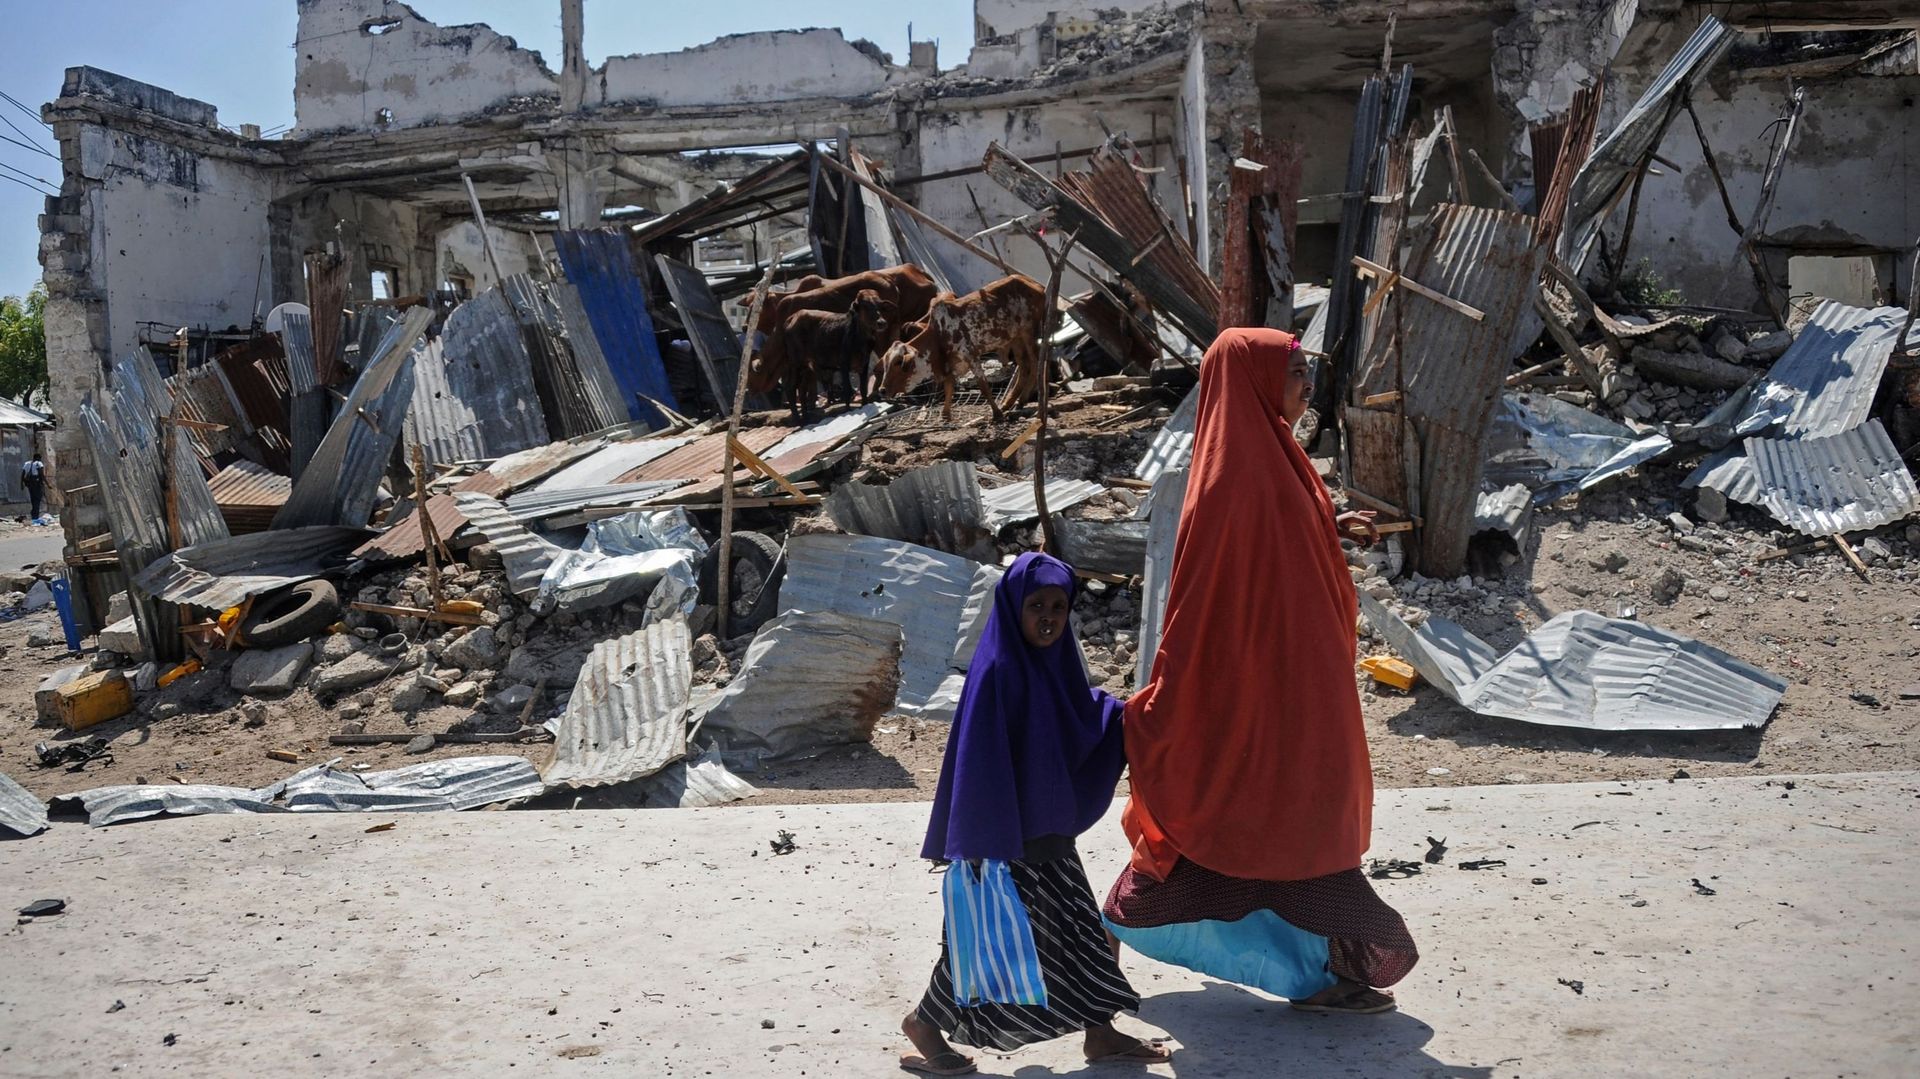 Somalie: le bilan du double attentat de samedi passe à 20 morts